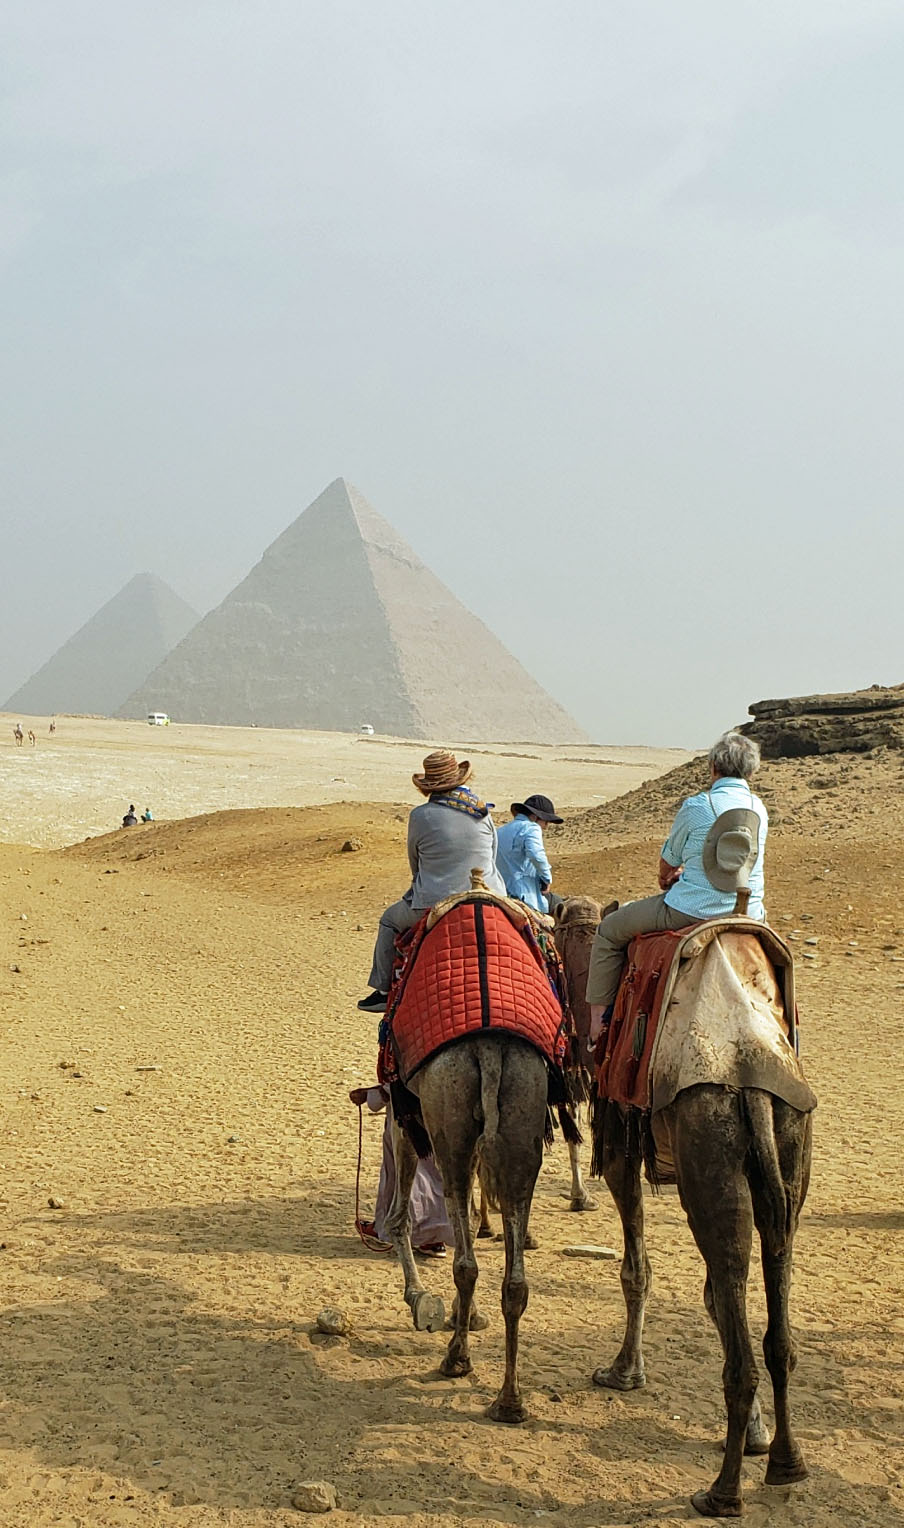 Giza Plateau in Egypt